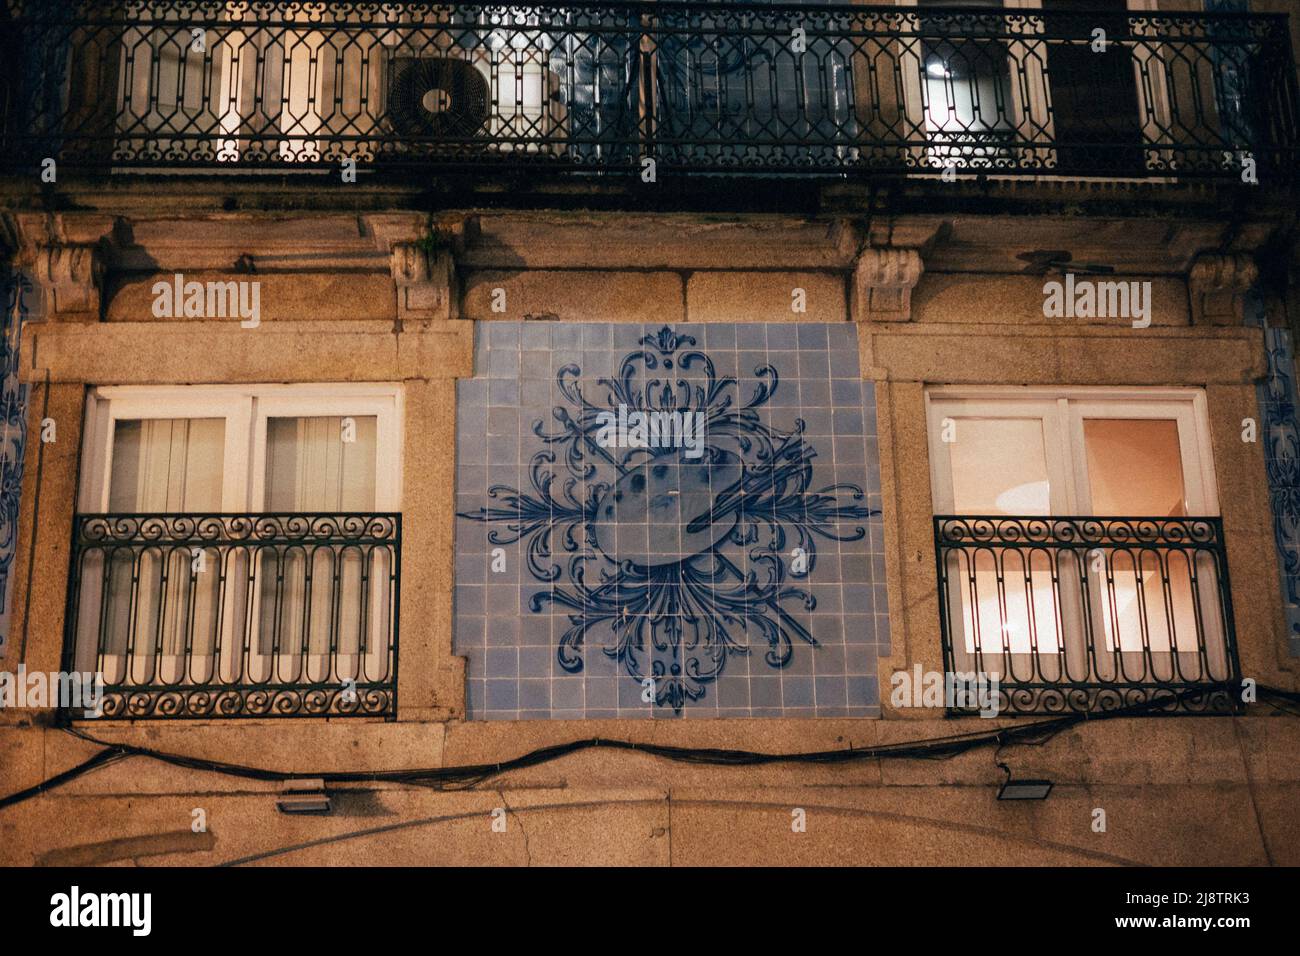 Porto, Portugal, 10.04.22: Nachtleben in Porto, ein Haus mit den typischen Azulejos Fliesen.  Foto: pressefoto Mika Volkmann Stock Photo